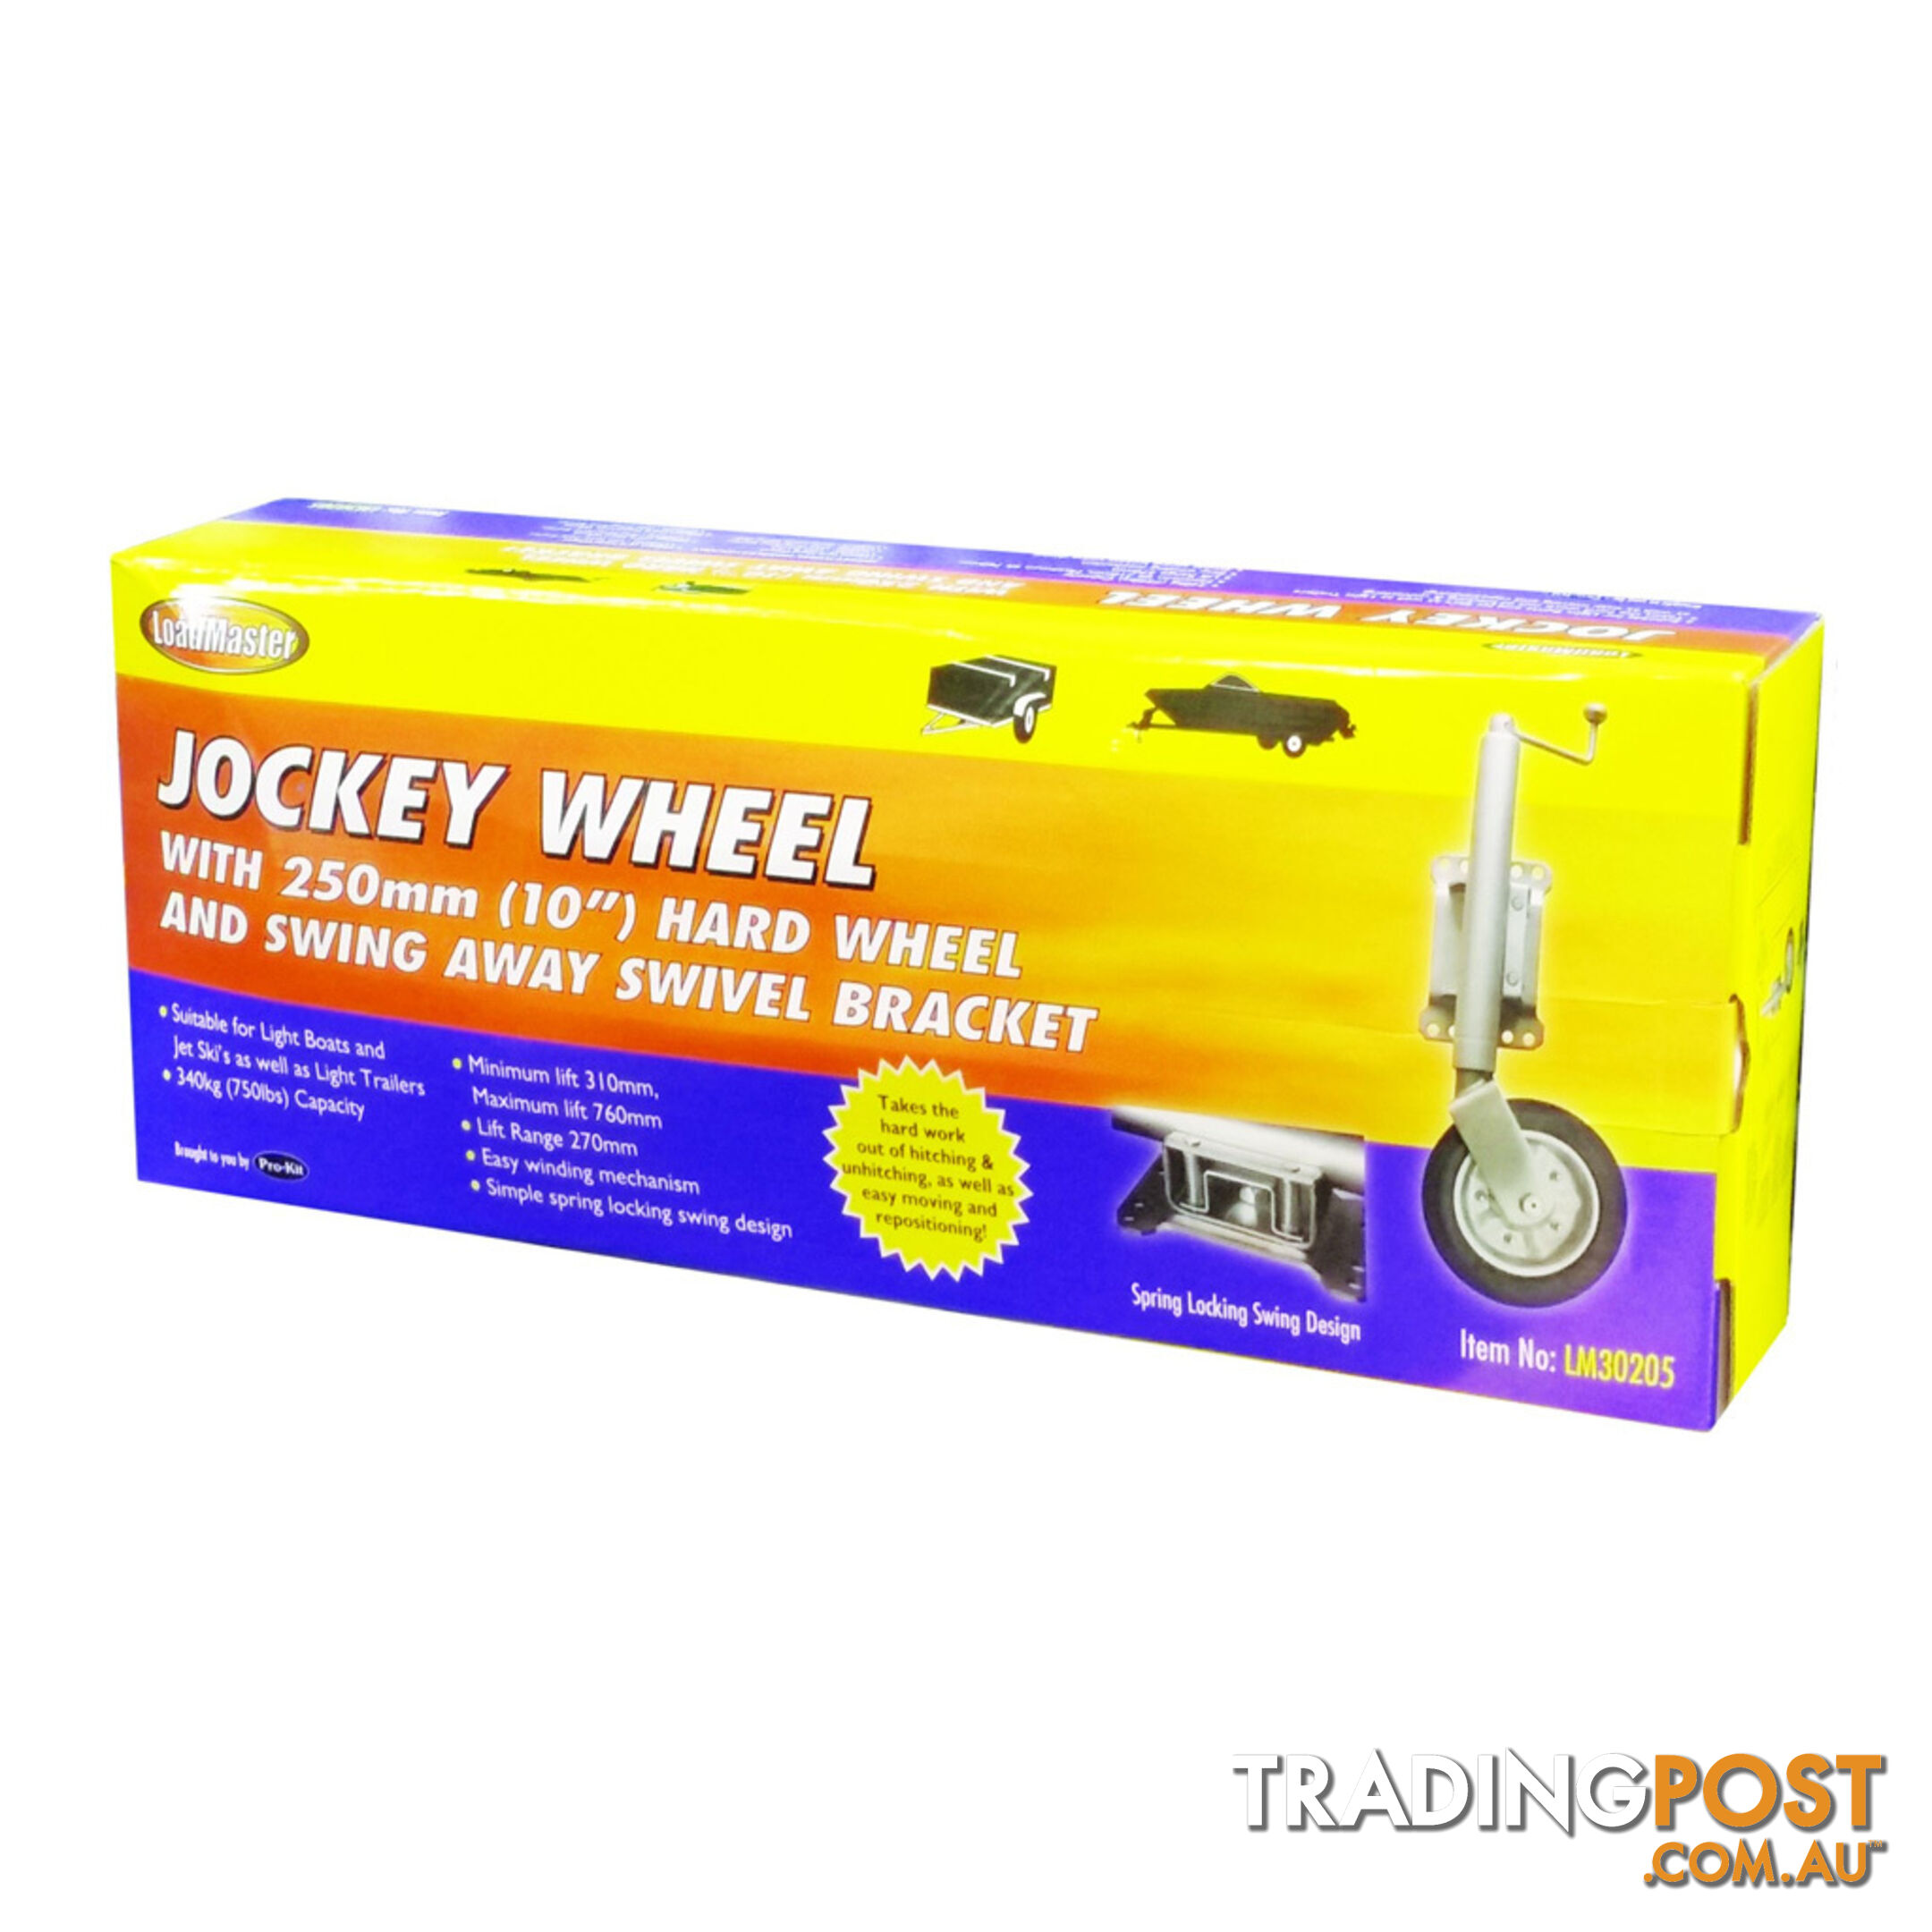 LoadMaster Jockey Wheel 250mm (10 ") Hard Wheel, Swing Away Swivel Bracket SKU - LM30205